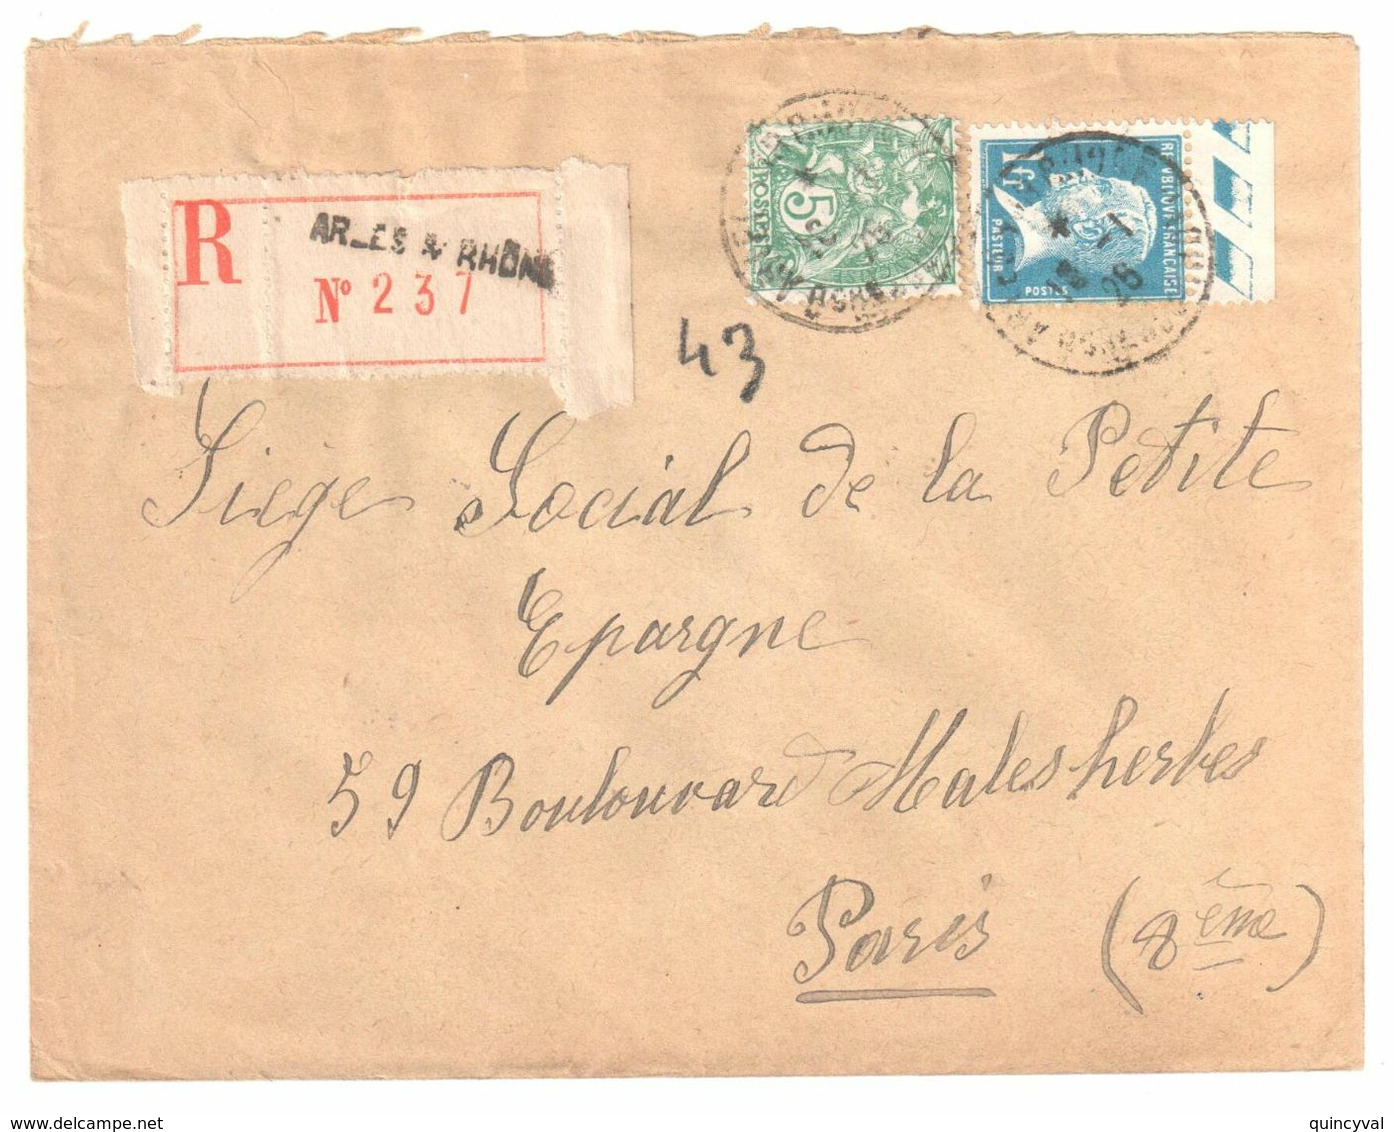 ARLES S RHONE Lettre Recommandée 1 F Pasteur Bord De Feuille 5c Blanc Yv 111 179 Ob 18 1 1926 - Storia Postale